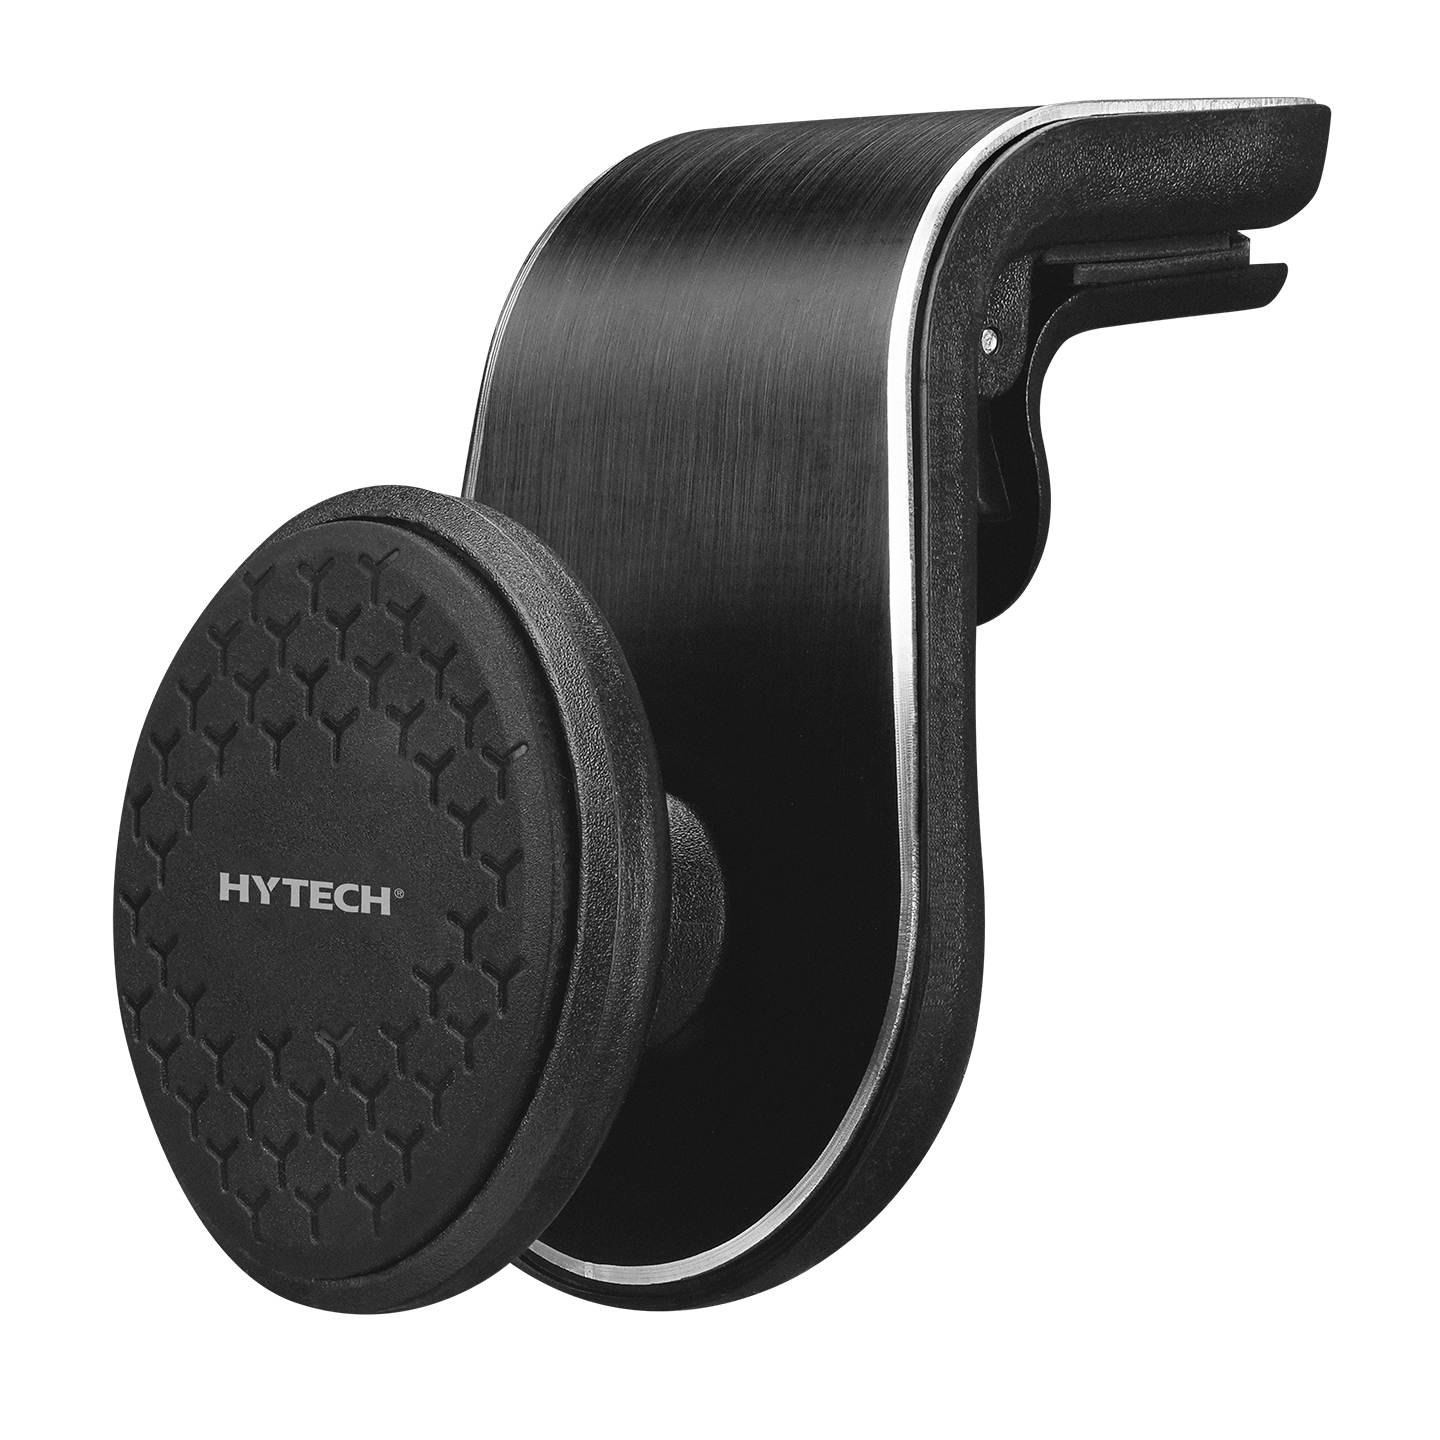 Hytech HY-XH18 Universal Ayarlanabilir Mıknatıslı Araç Telefon Tutucu